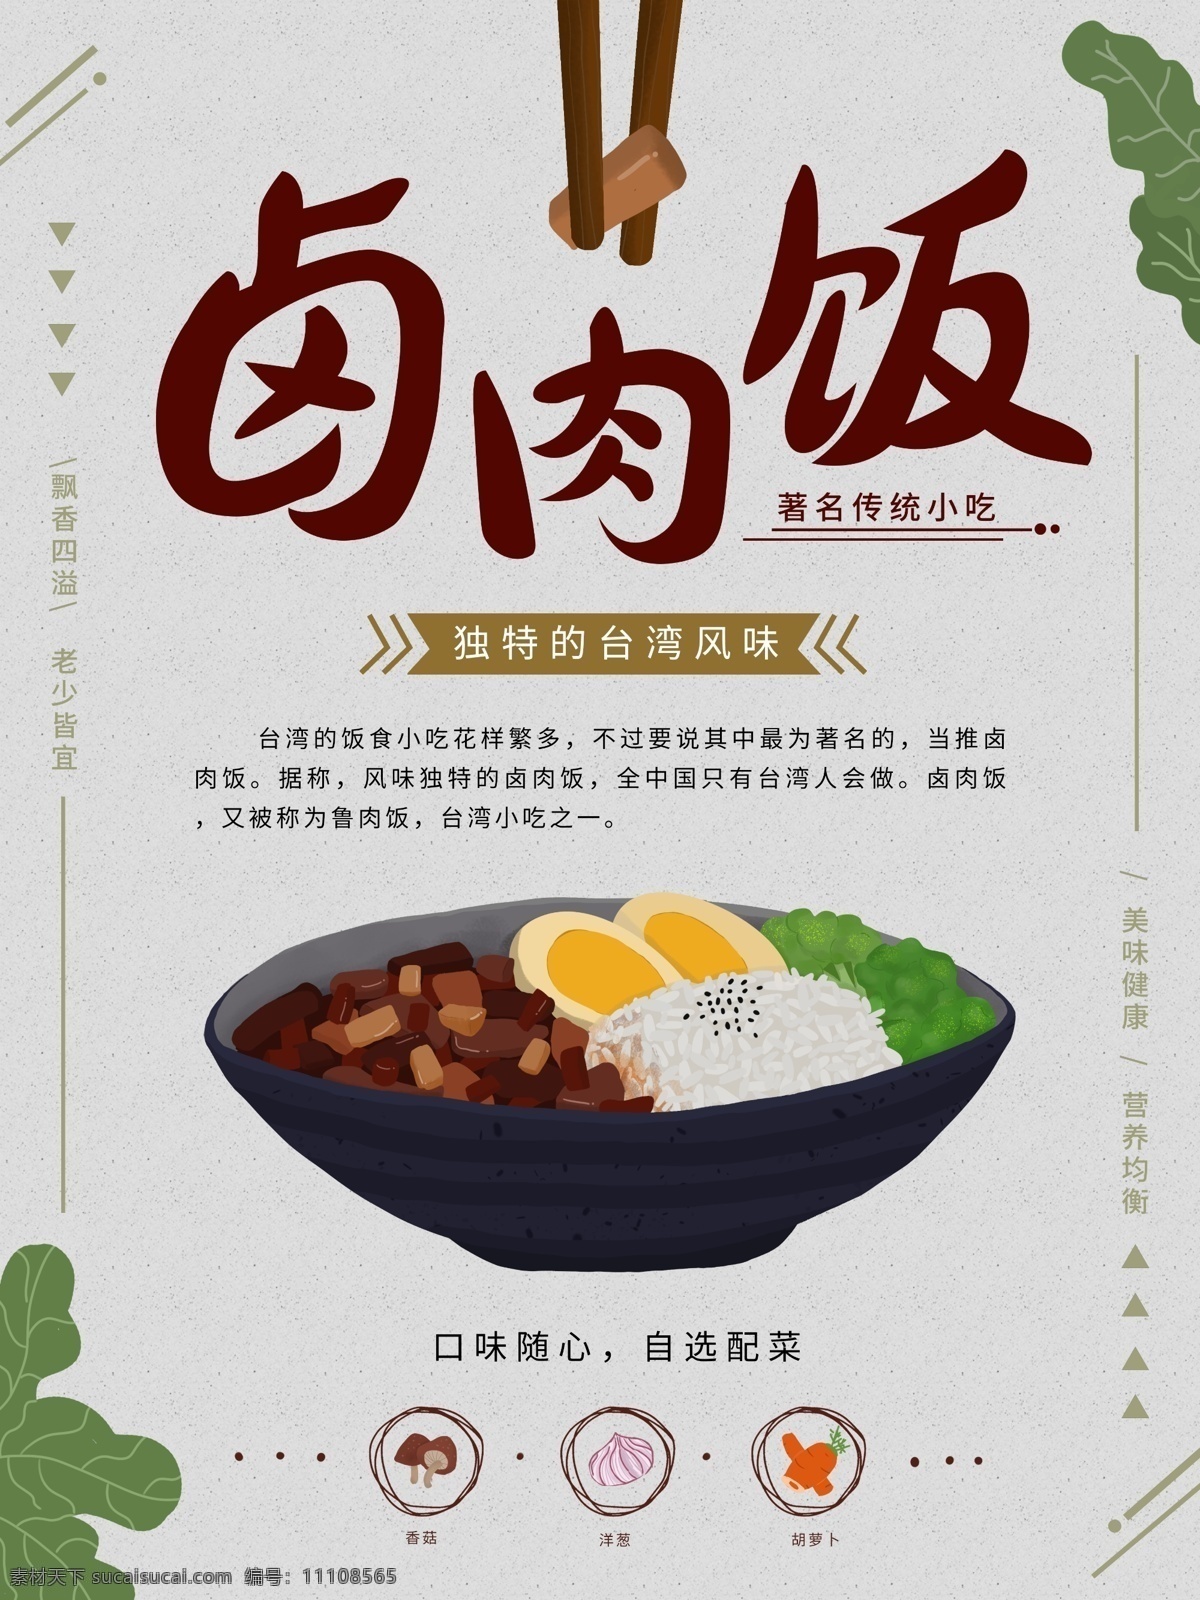 原创 手绘 插画 台湾 美食 卤肉 饭 宣传海报 促销海报 展架 碗 肉 小清新 小吃